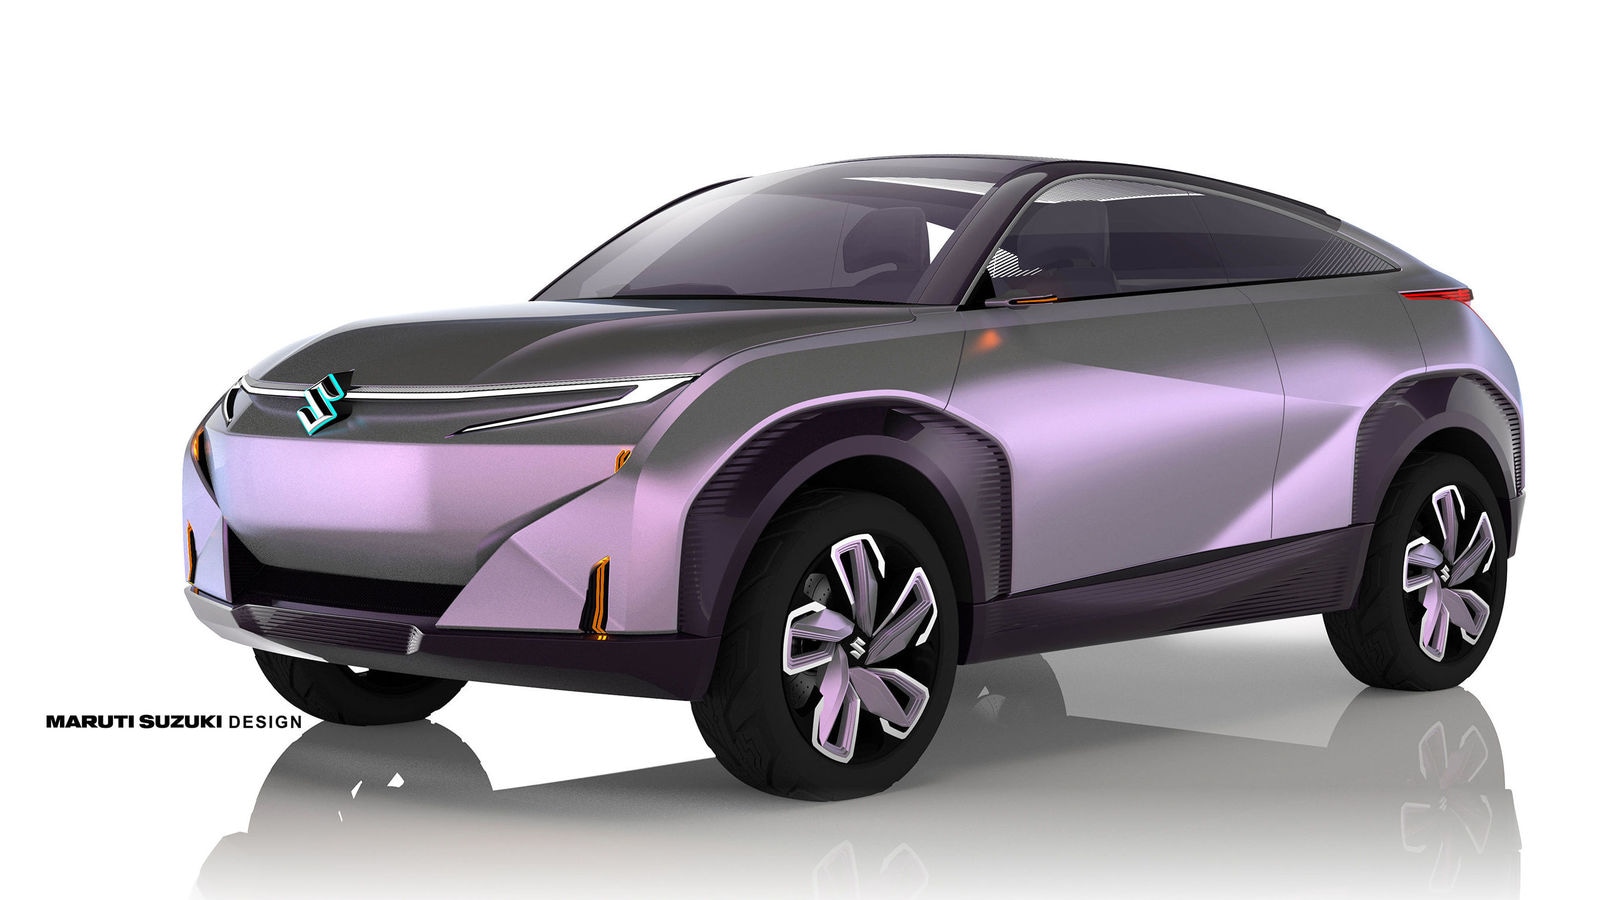 What it takes to design concept tires for Maruti Suzuki's Concept Futuro-e  SUV